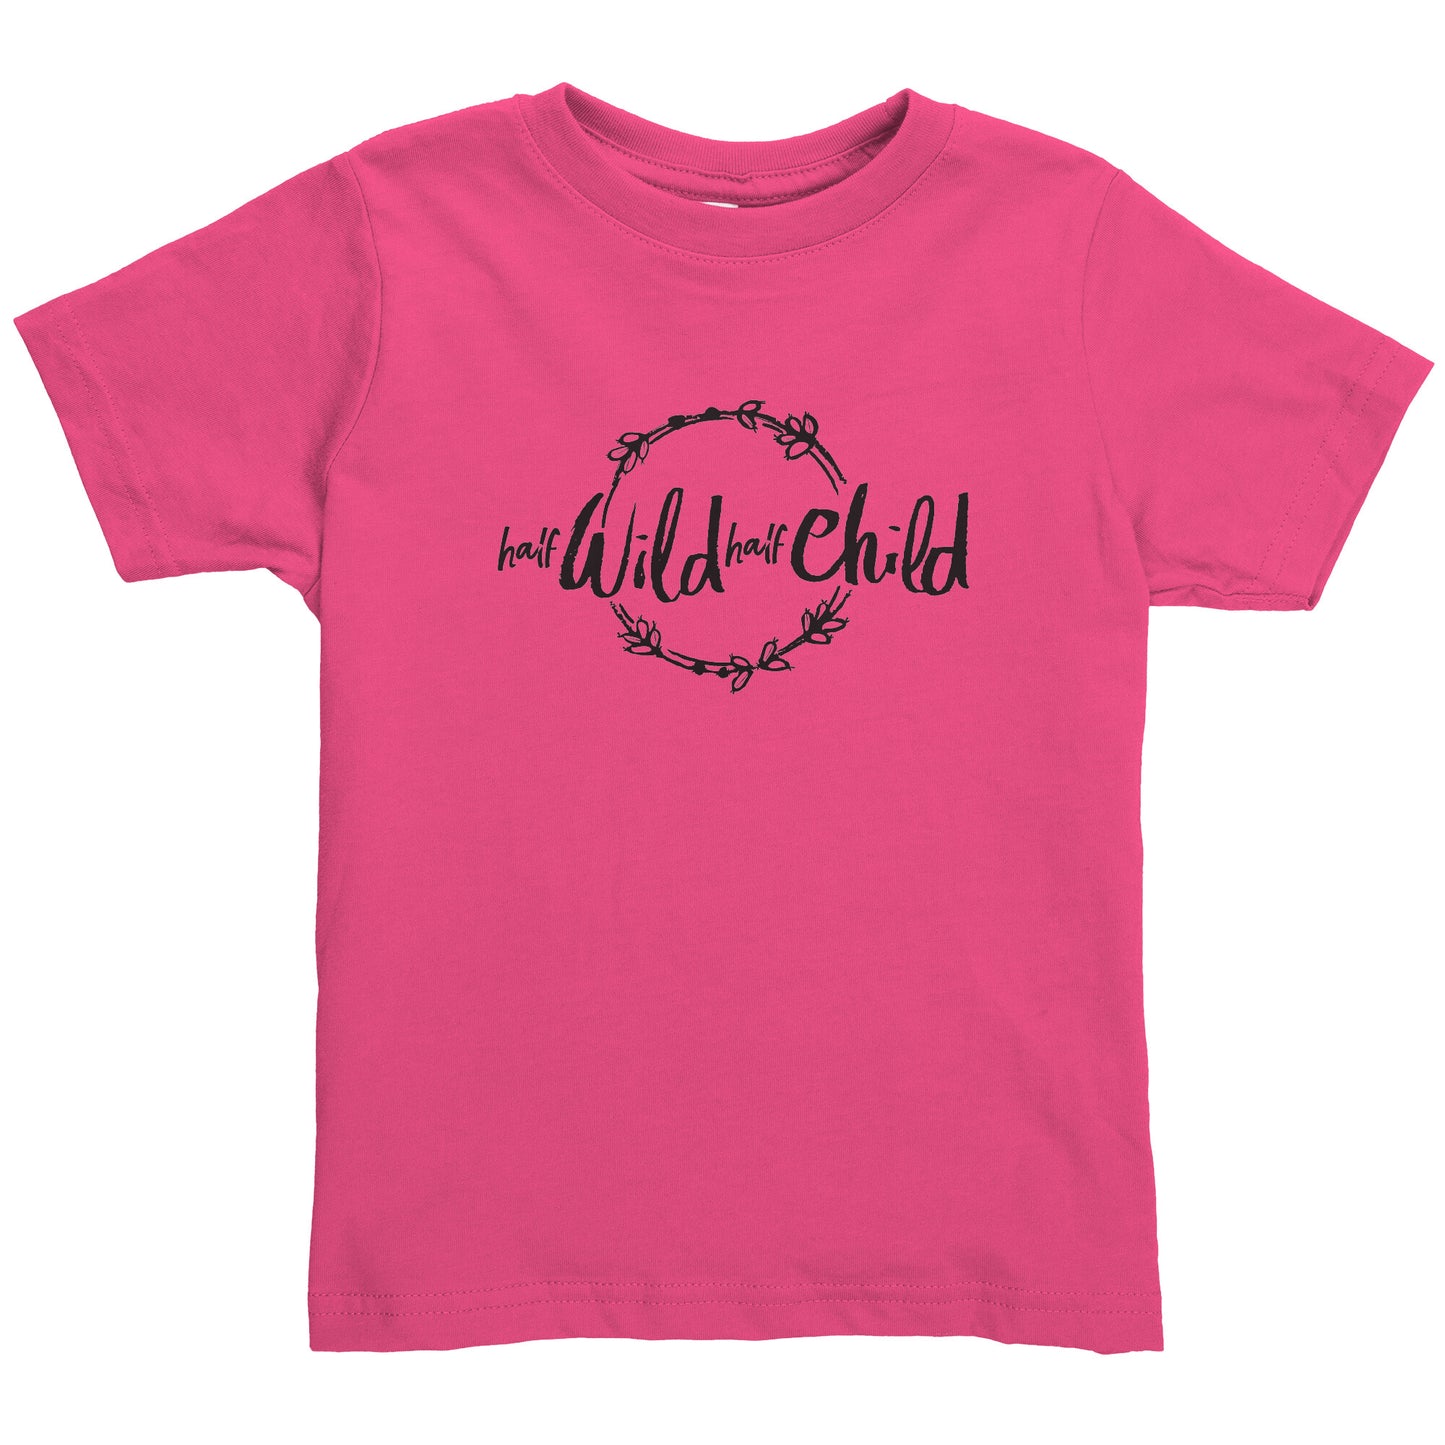 Half Wild Half Child Toddler Shirt